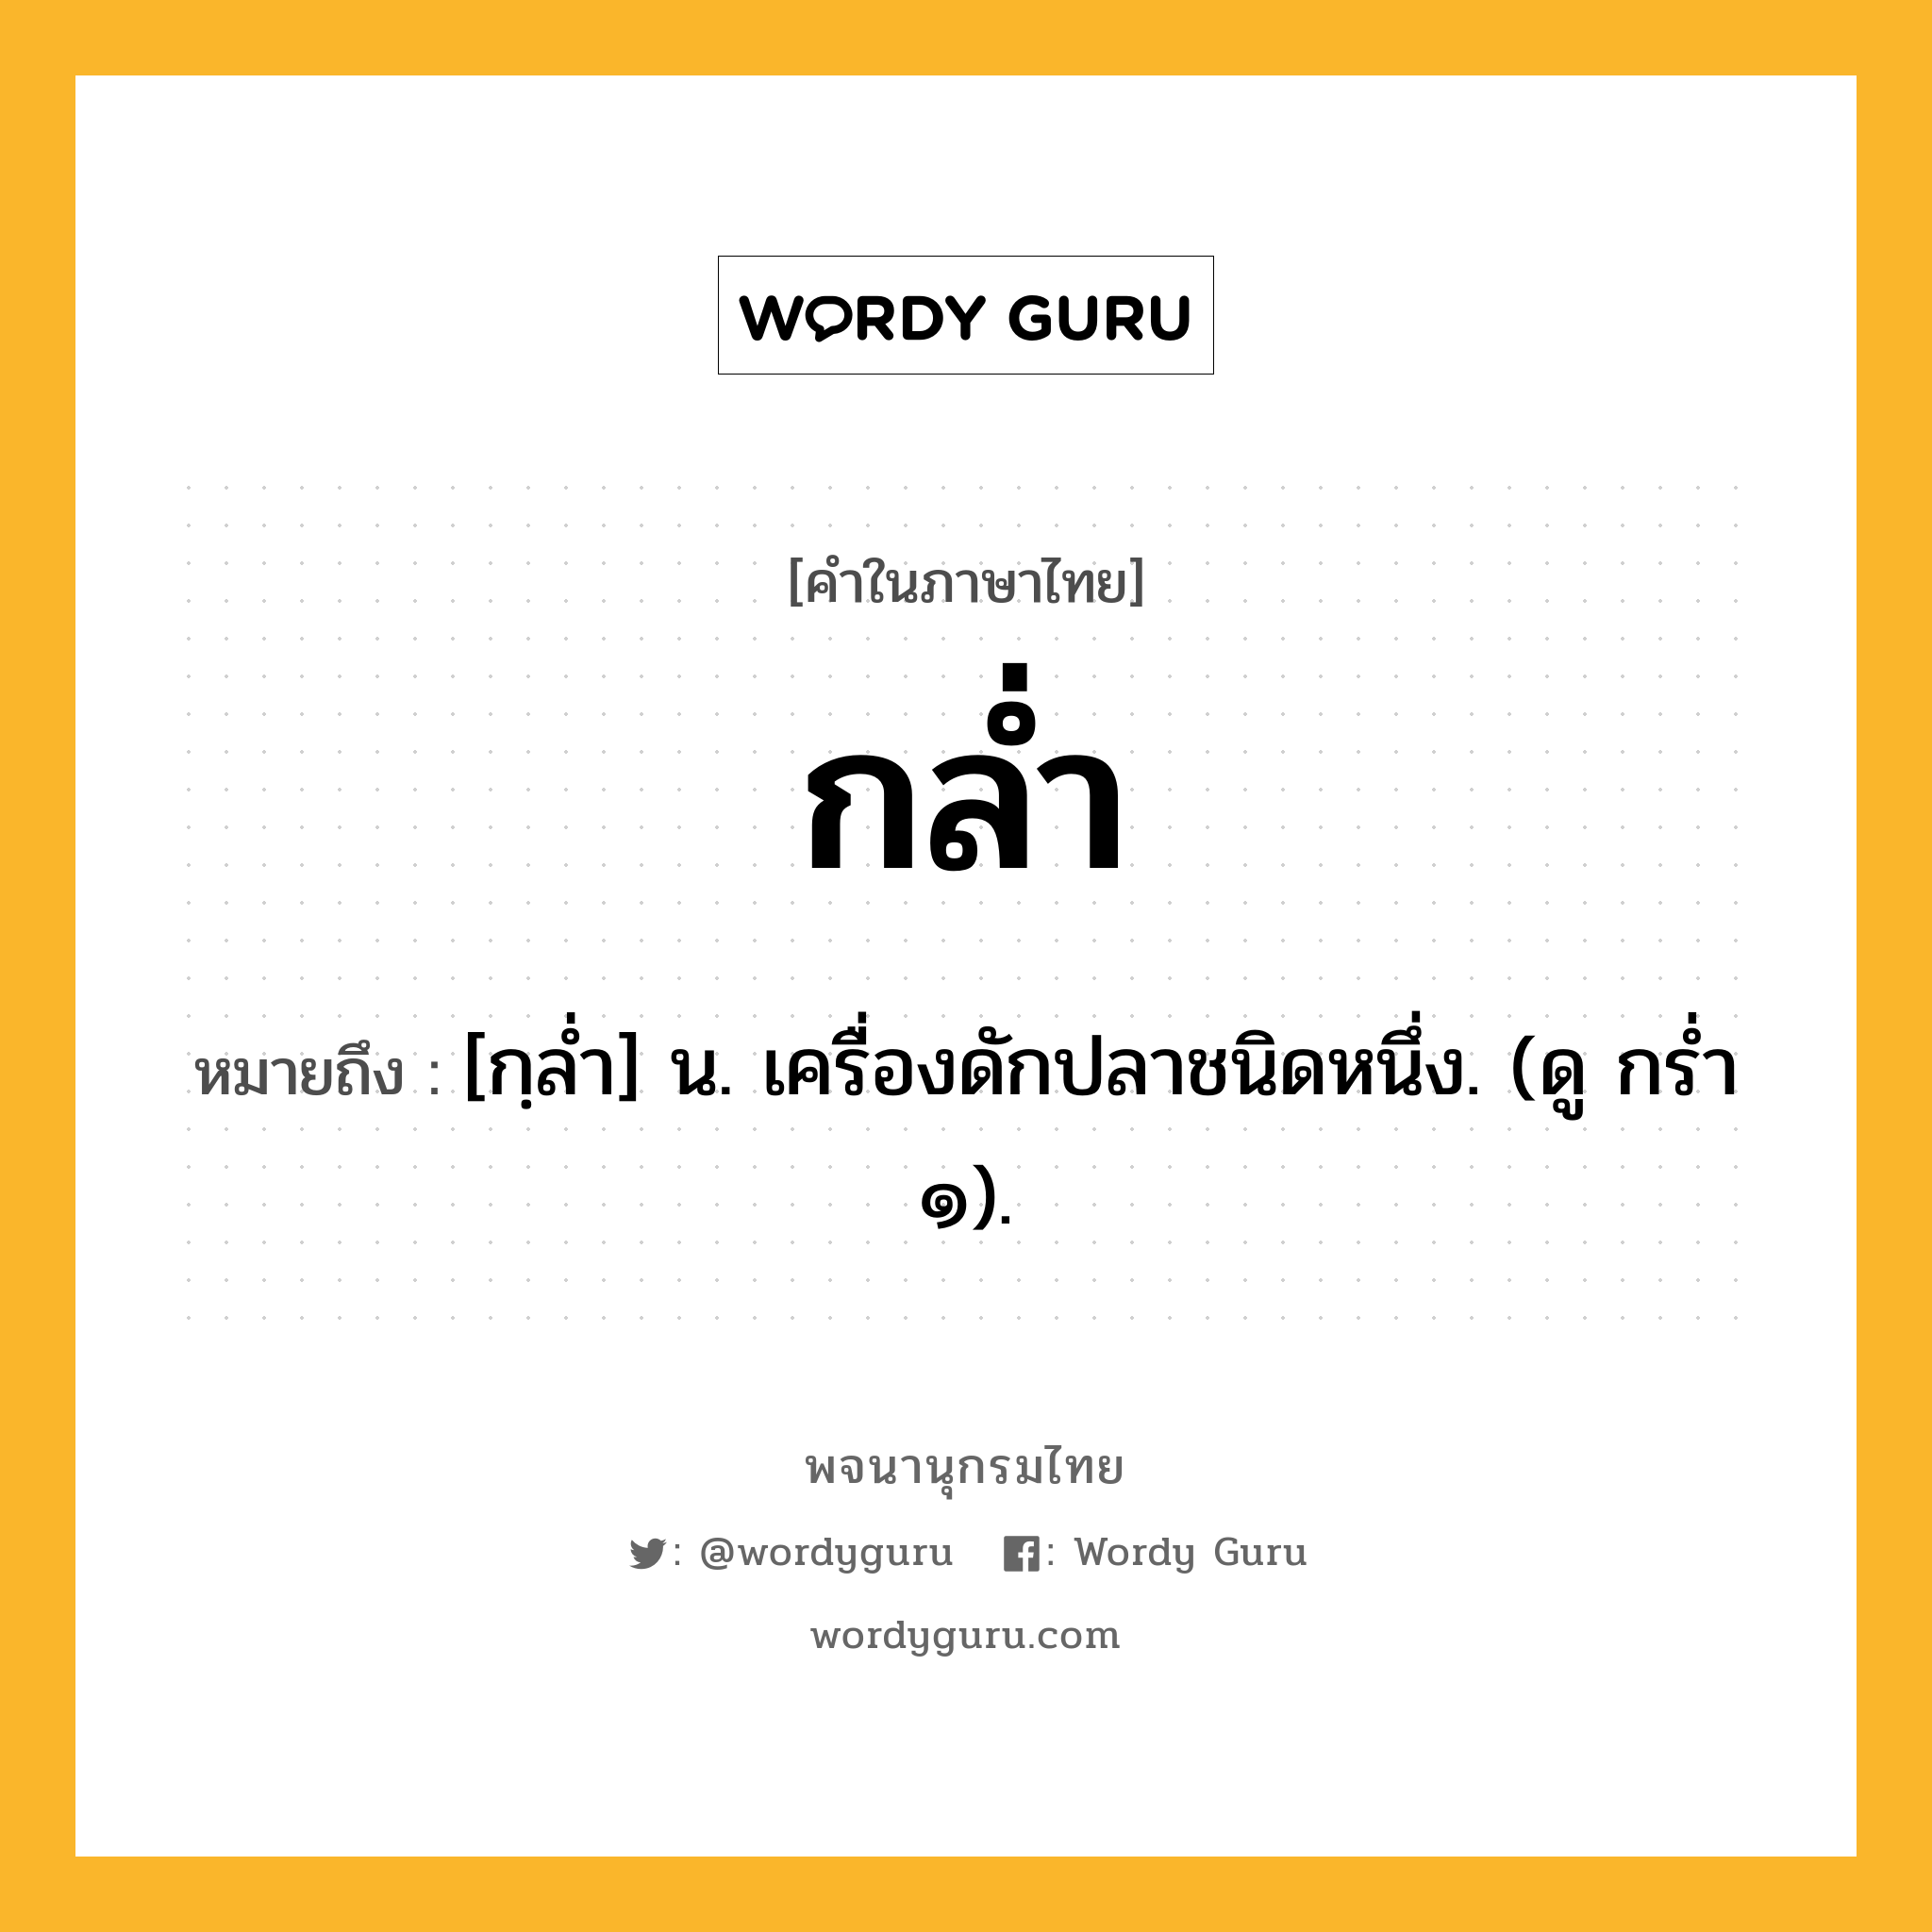 กล่ำ ความหมาย หมายถึงอะไร?, คำในภาษาไทย กล่ำ หมายถึง [กฺลํ่า] น. เครื่องดักปลาชนิดหนึ่ง. (ดู กร่ำ ๑).